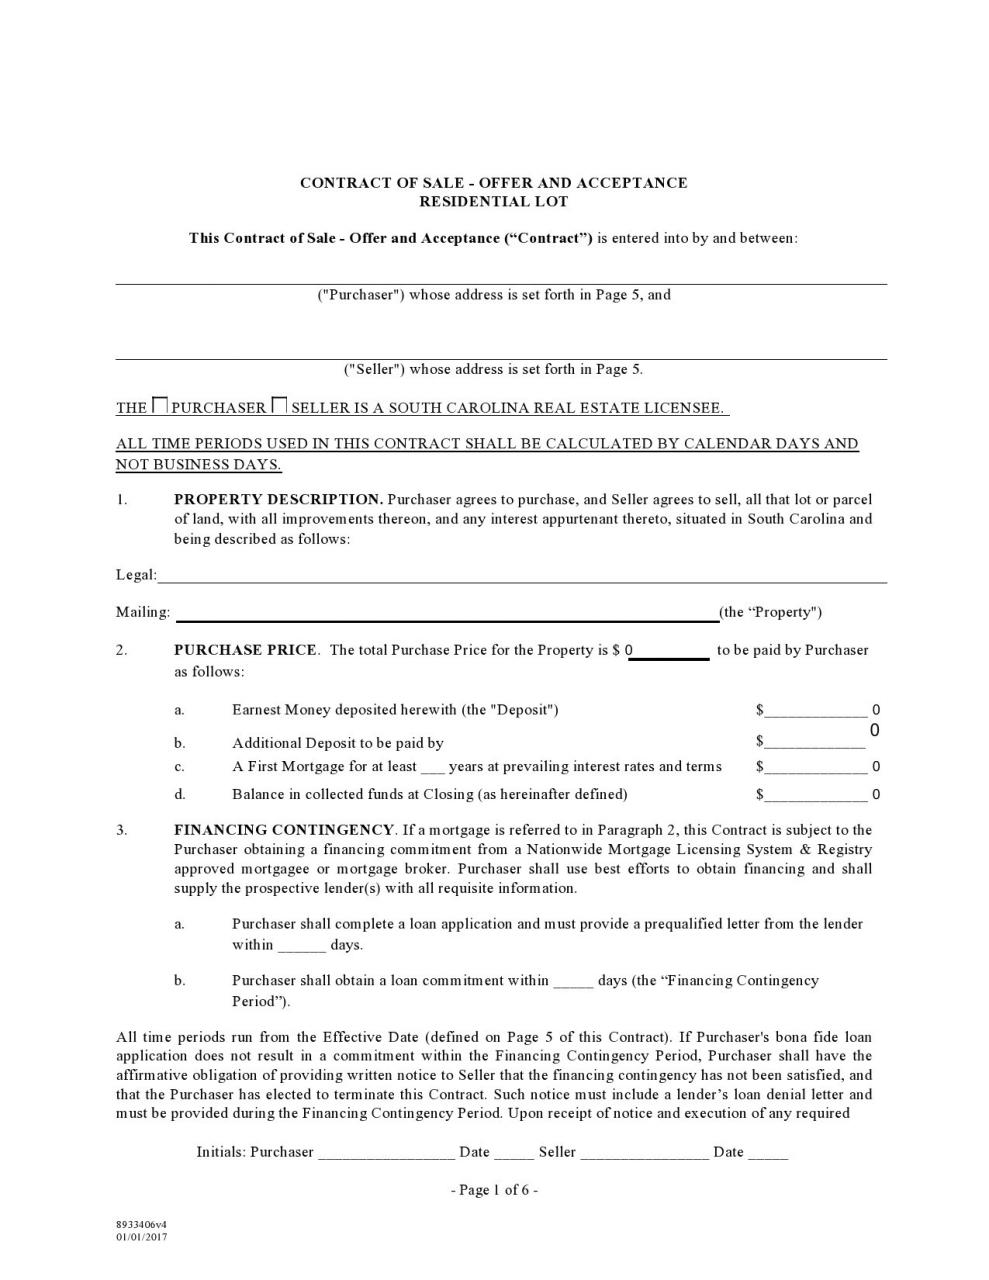 formulario de contrato de tierra gratis 25